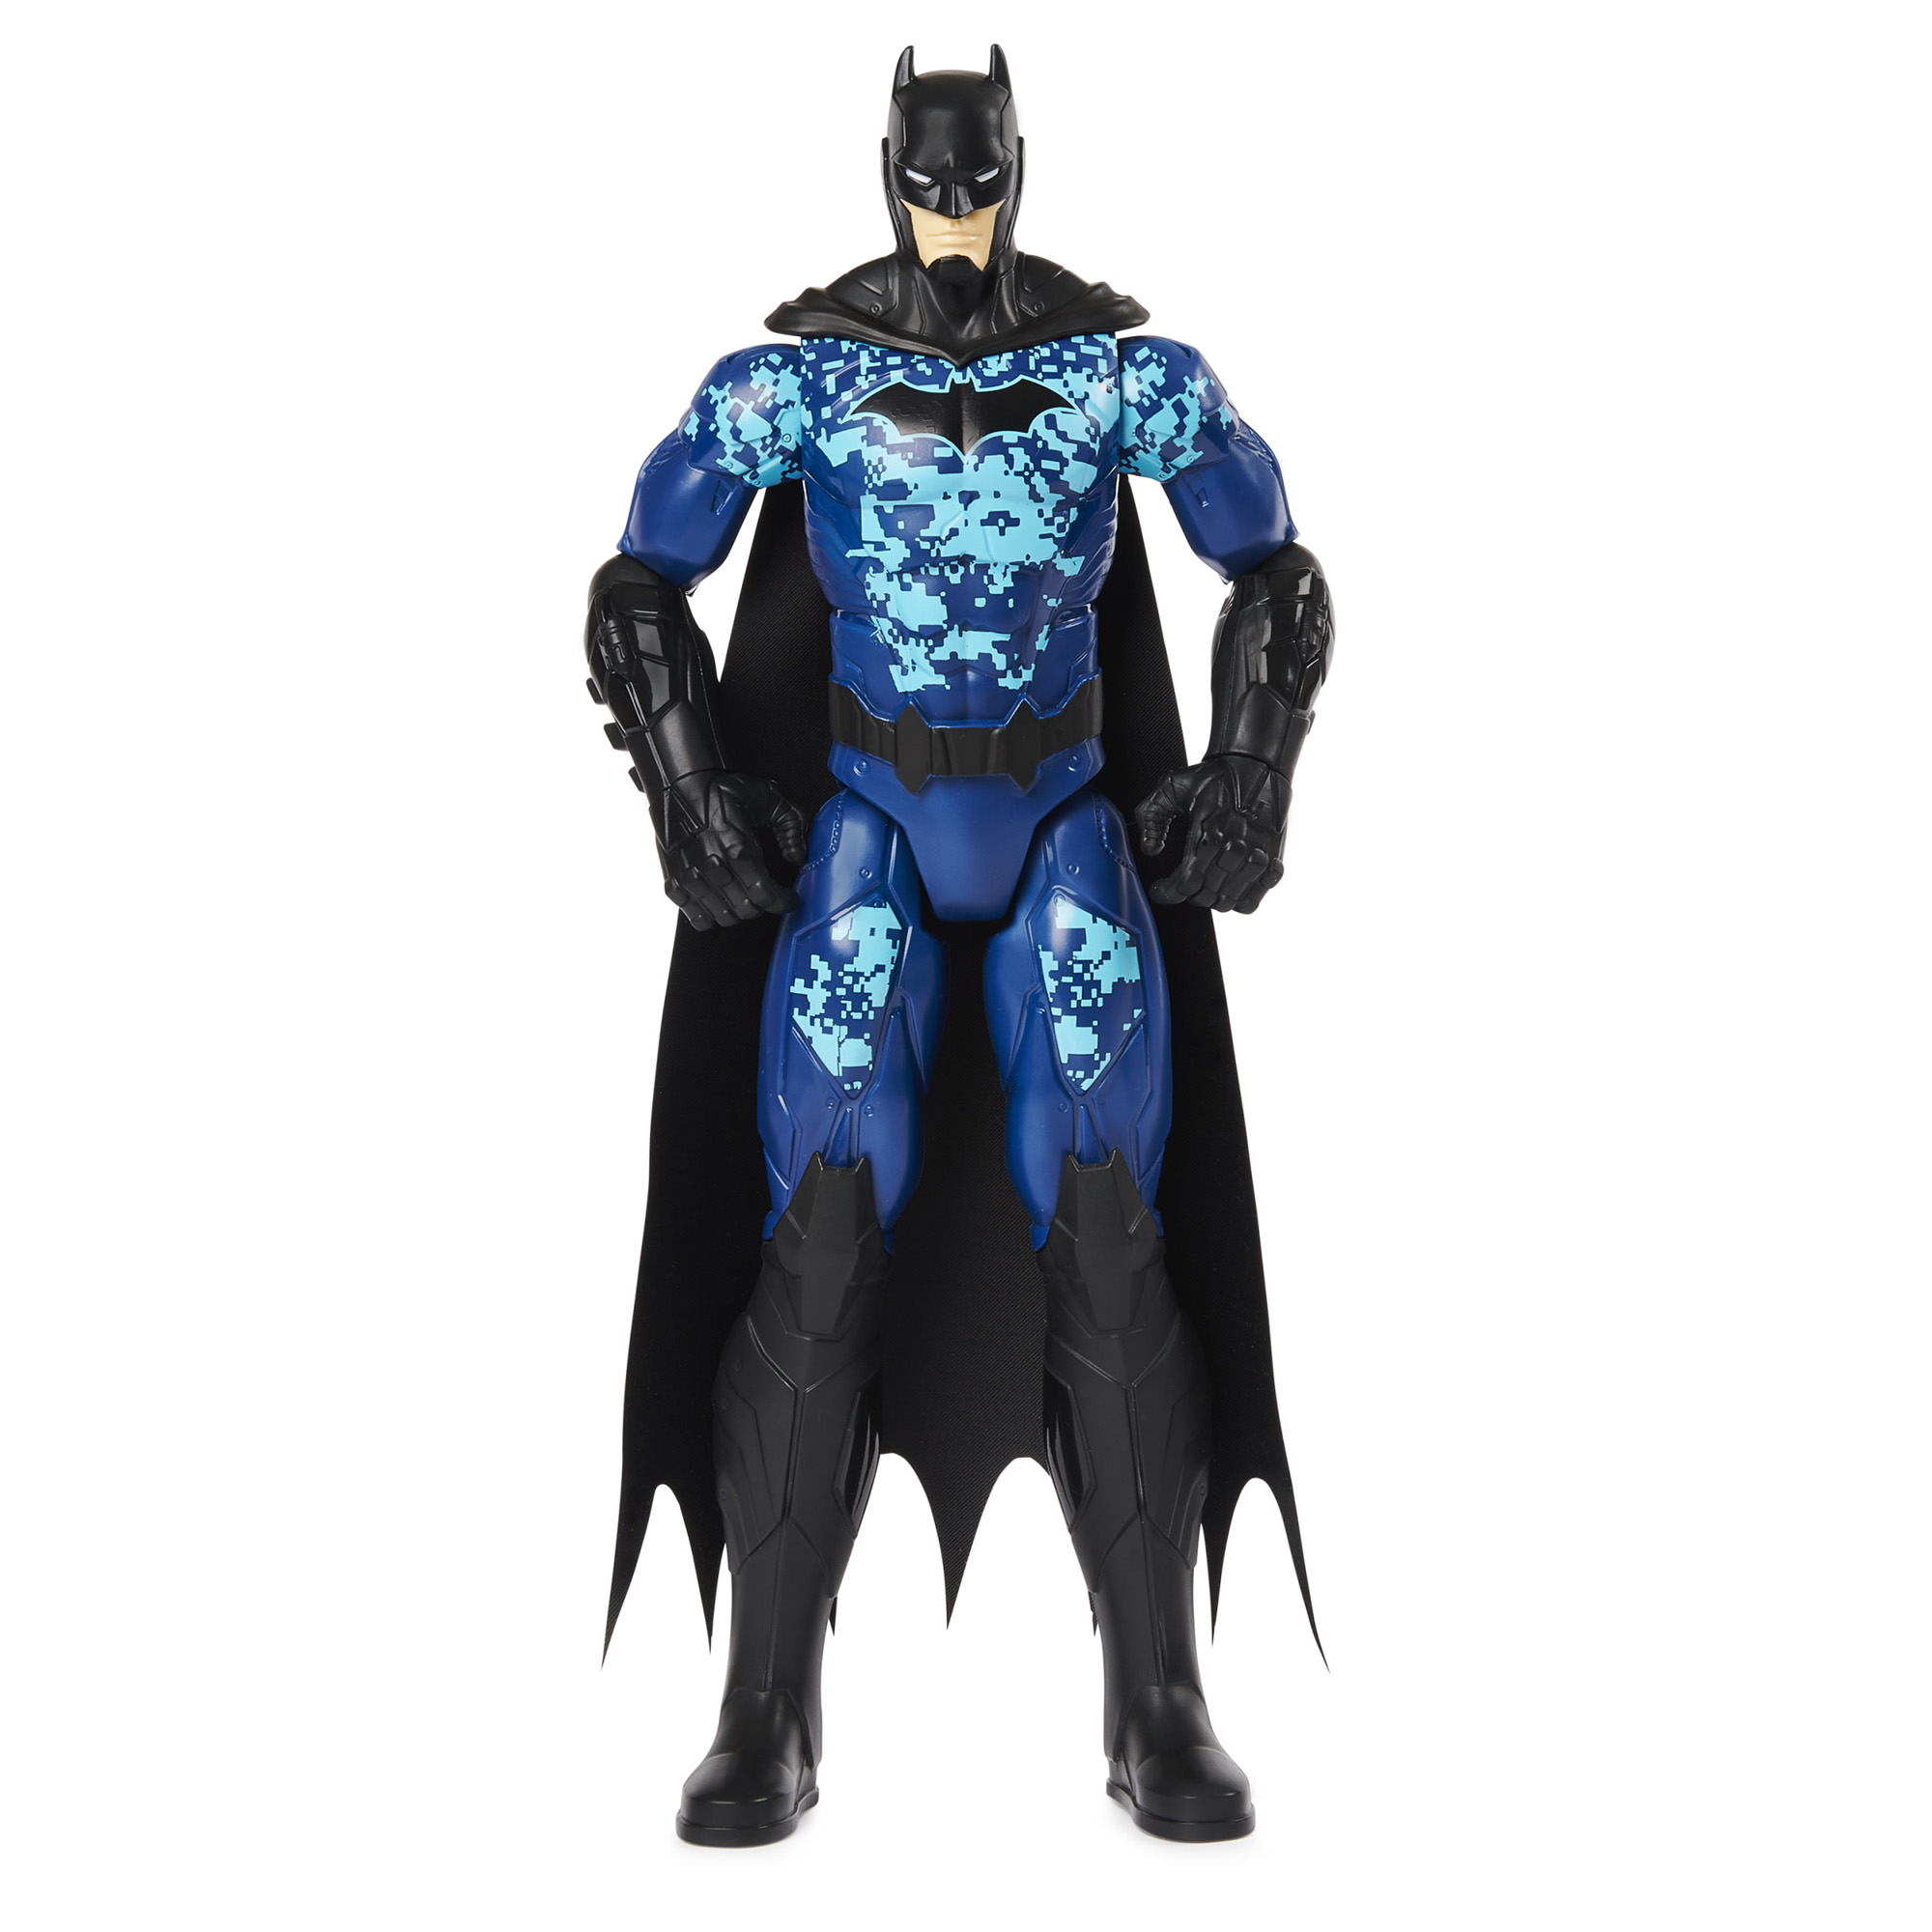 Personaggio Bat-Tech con armatura blu da 30 cm - DC Comics